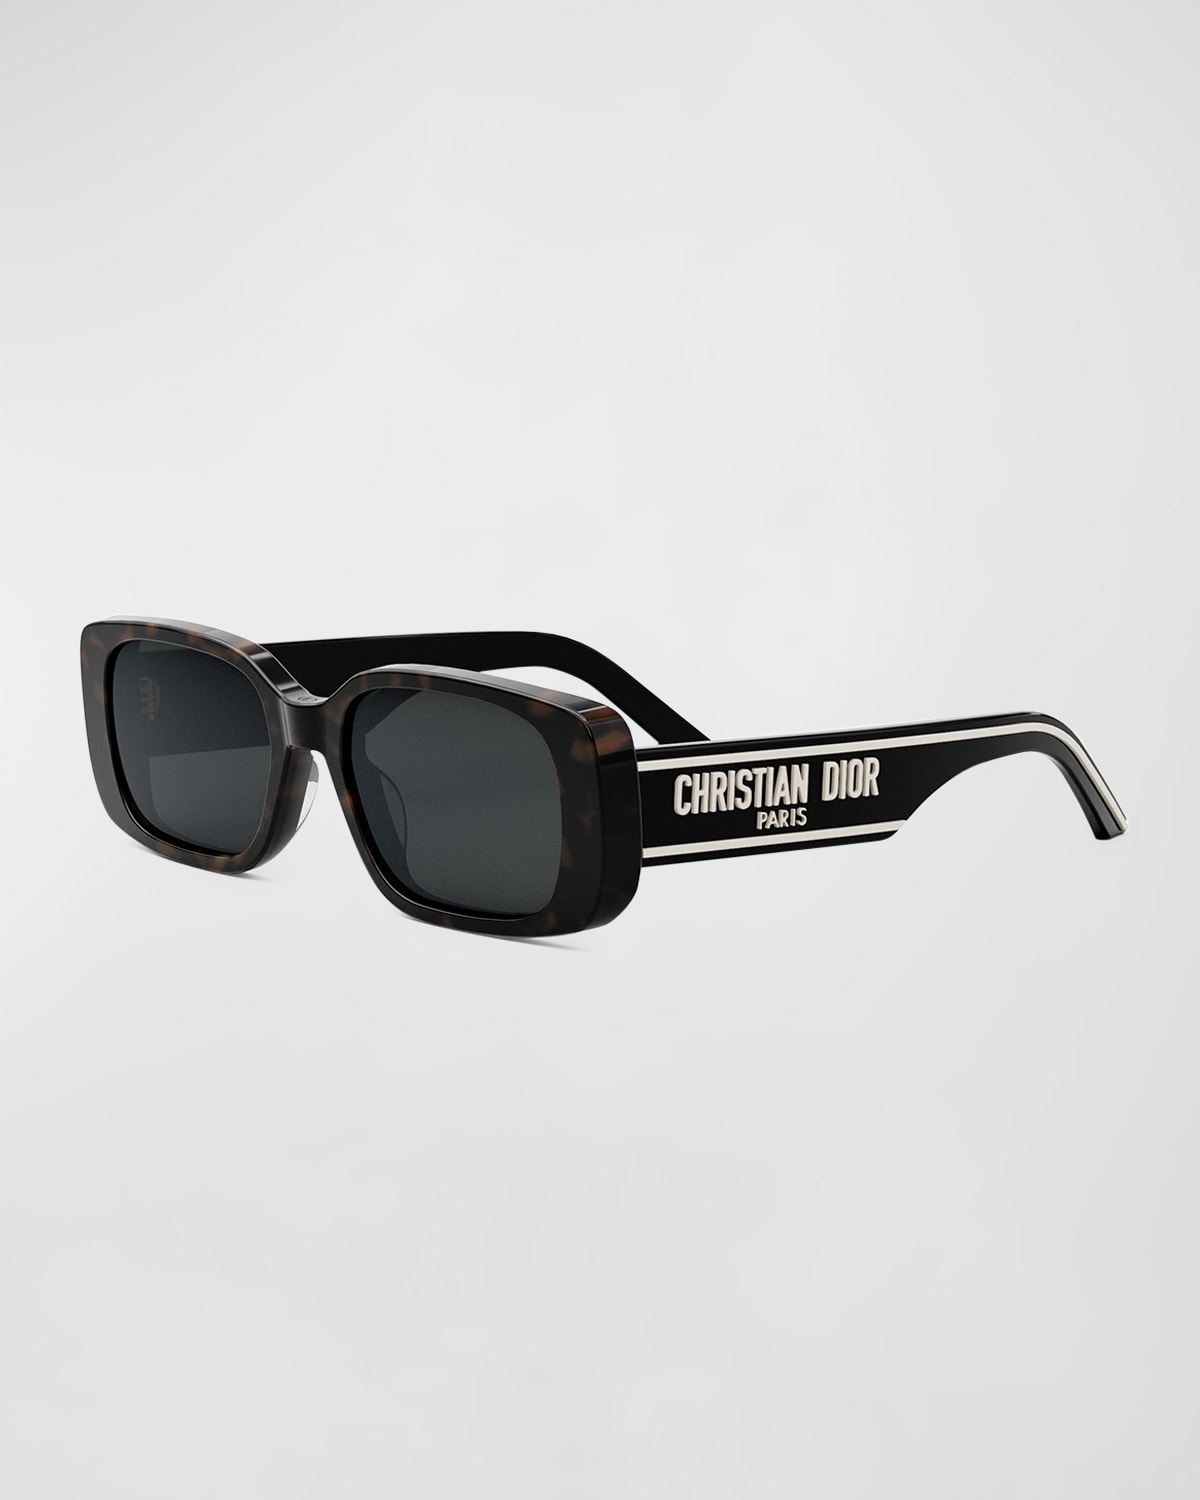 Wildior S2U Sunglasses